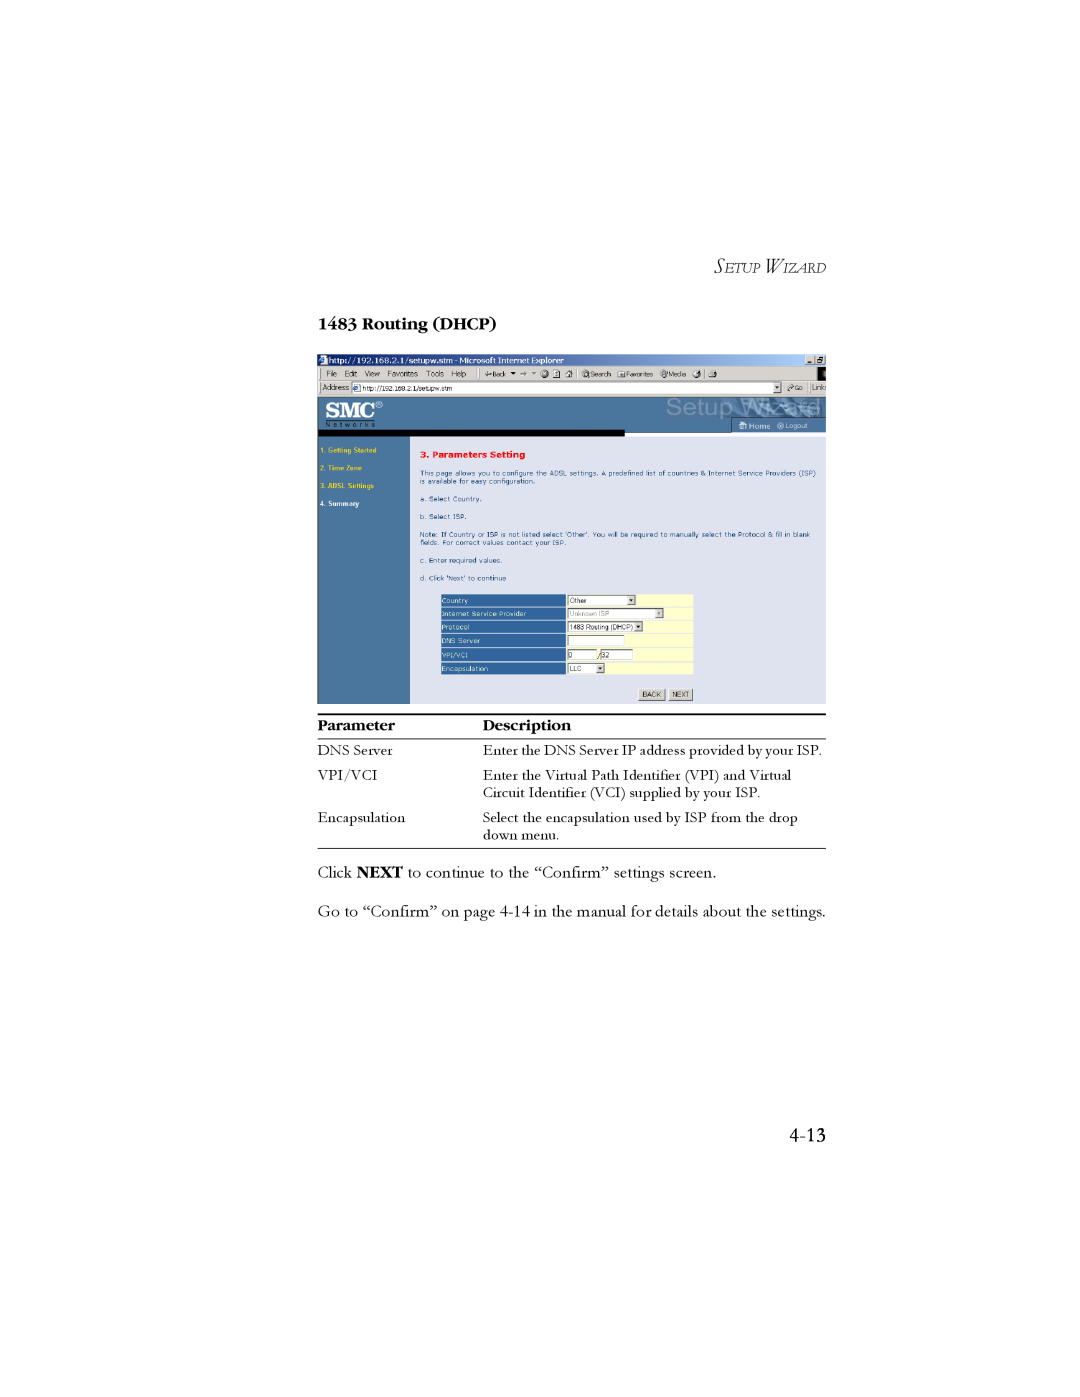 SMC Networks SMC7904BRB2 manual 4-13, Routing DHCP, Parameter, Description, Setup Wizard 